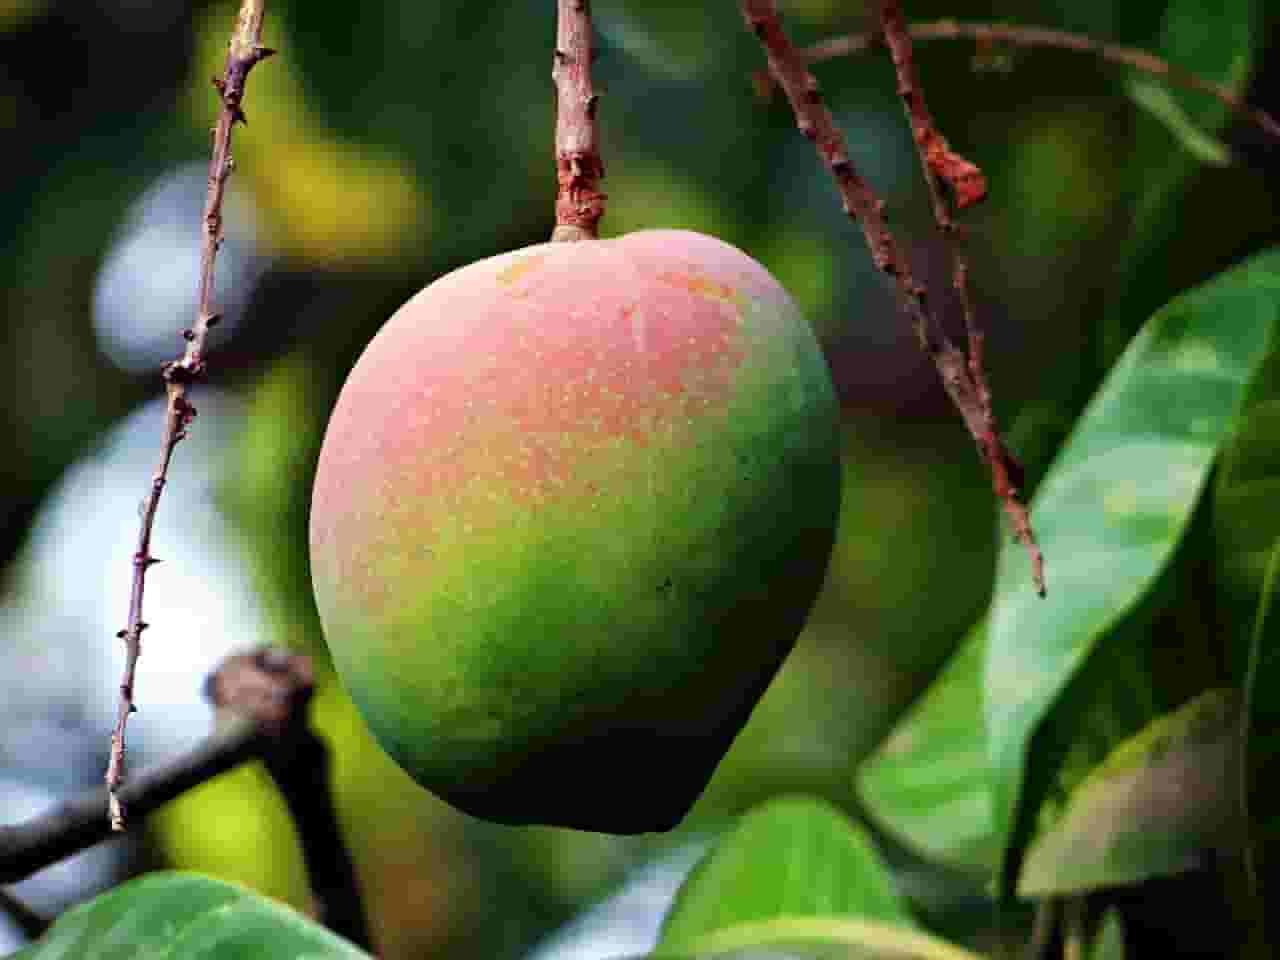 mango in hindi